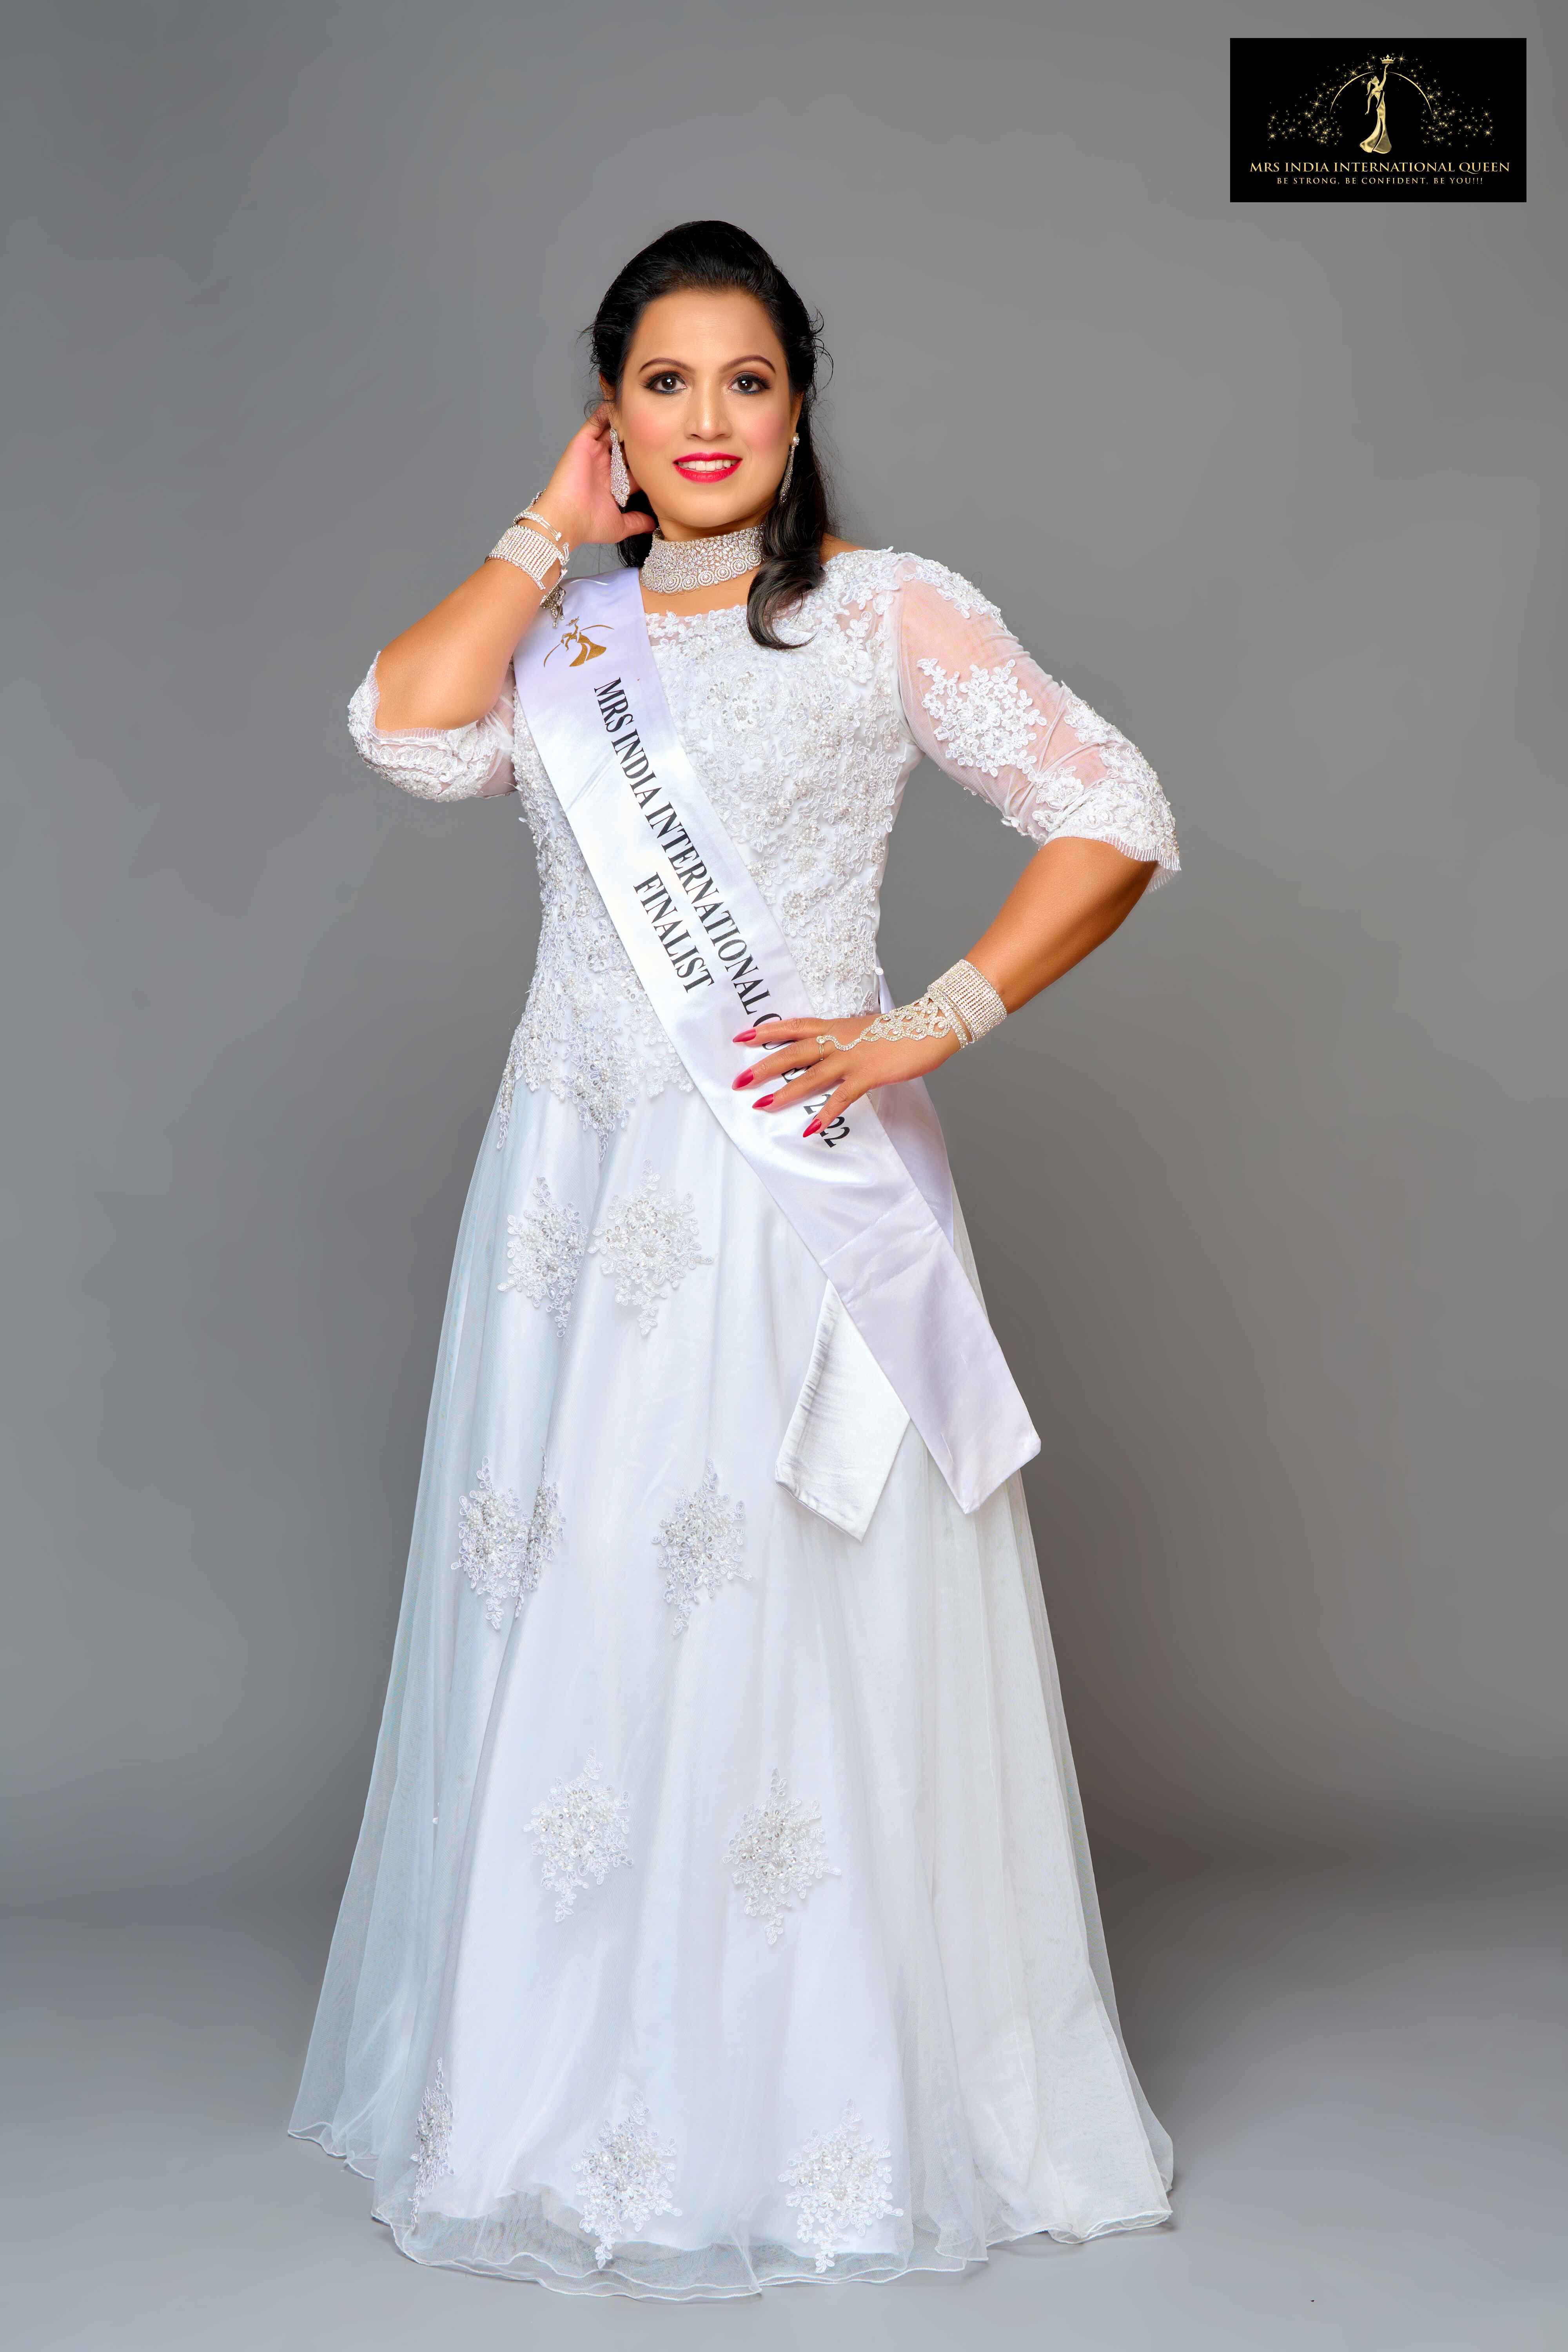 White Wear 2022 - Mrs India International Queen